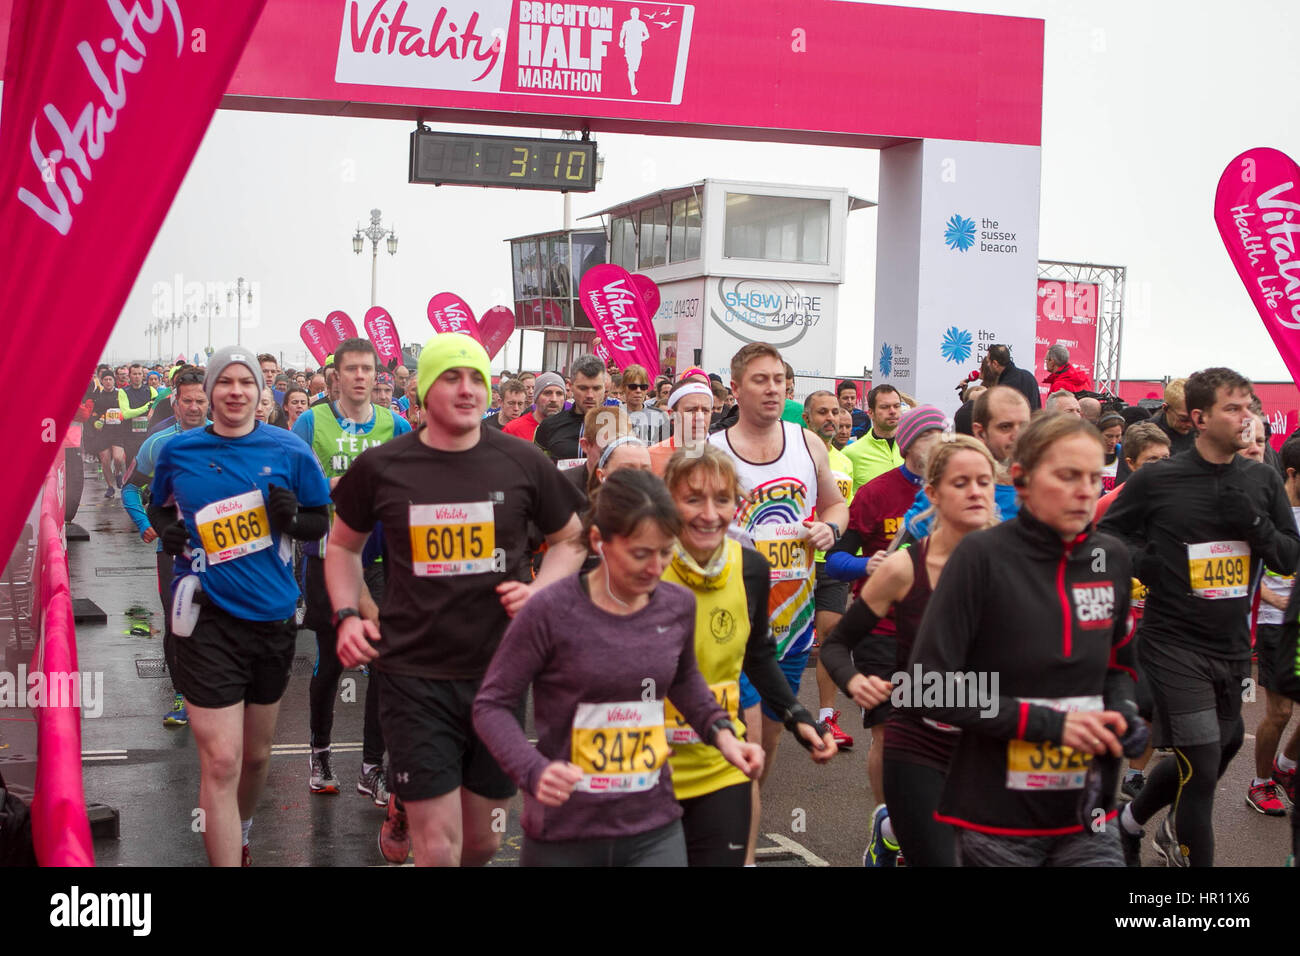 Brighton, UK. 26. Februar 2017. Vitalität-Halbmarathon statt in der Stadt Brighton, UK. 26. Februar 2017. Bildnachweis: Matt Duckett/ImagesLive/ZUMA Draht/Alamy Live-Nachrichten Stockfoto